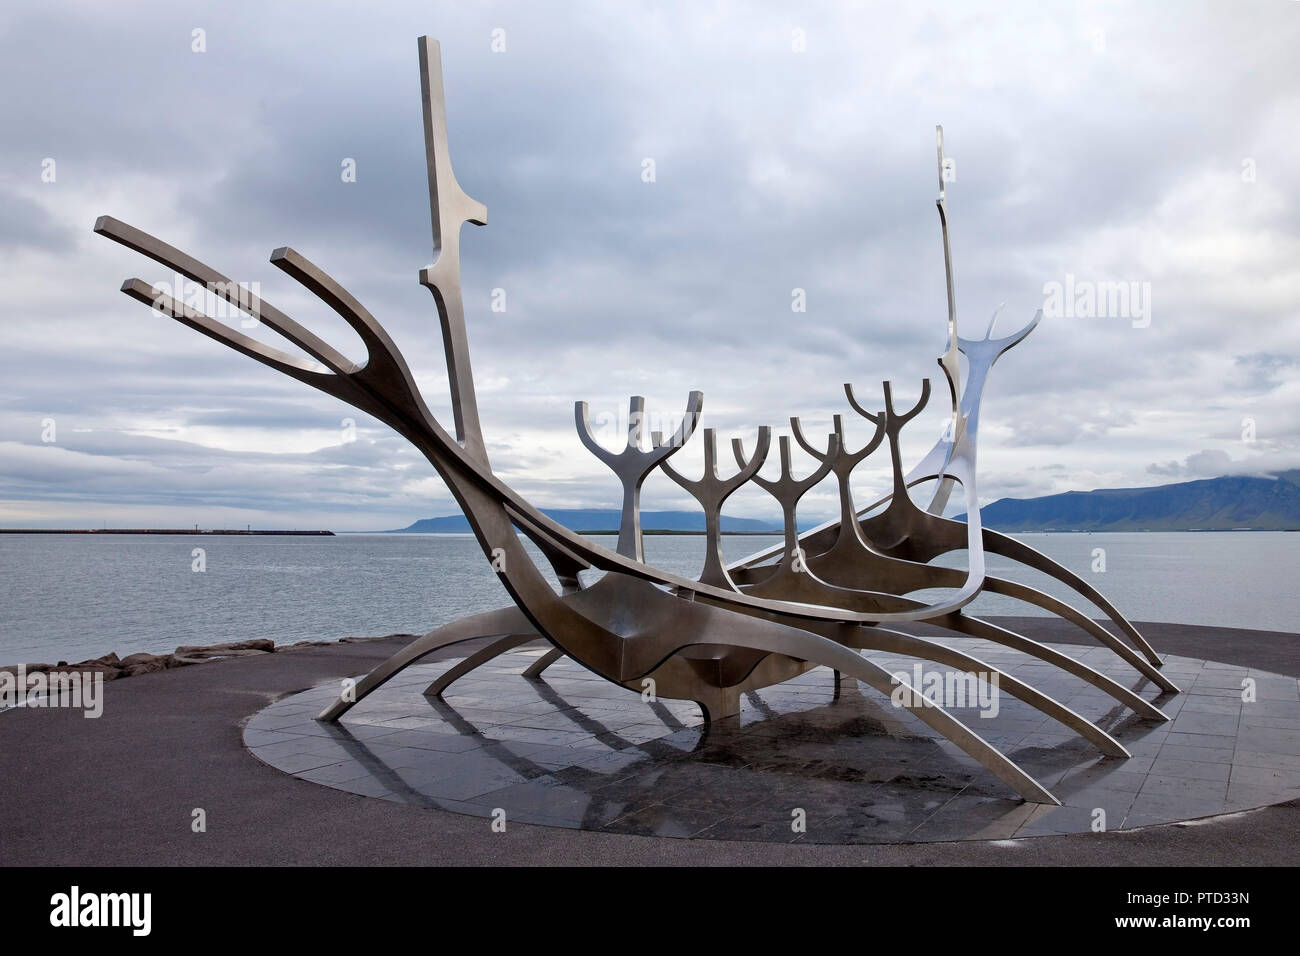 Sculpture Sólfar, Viking ship made of steel, artist Jón Gunnar Árnason, Reykjavik, Iceland Stock Photo